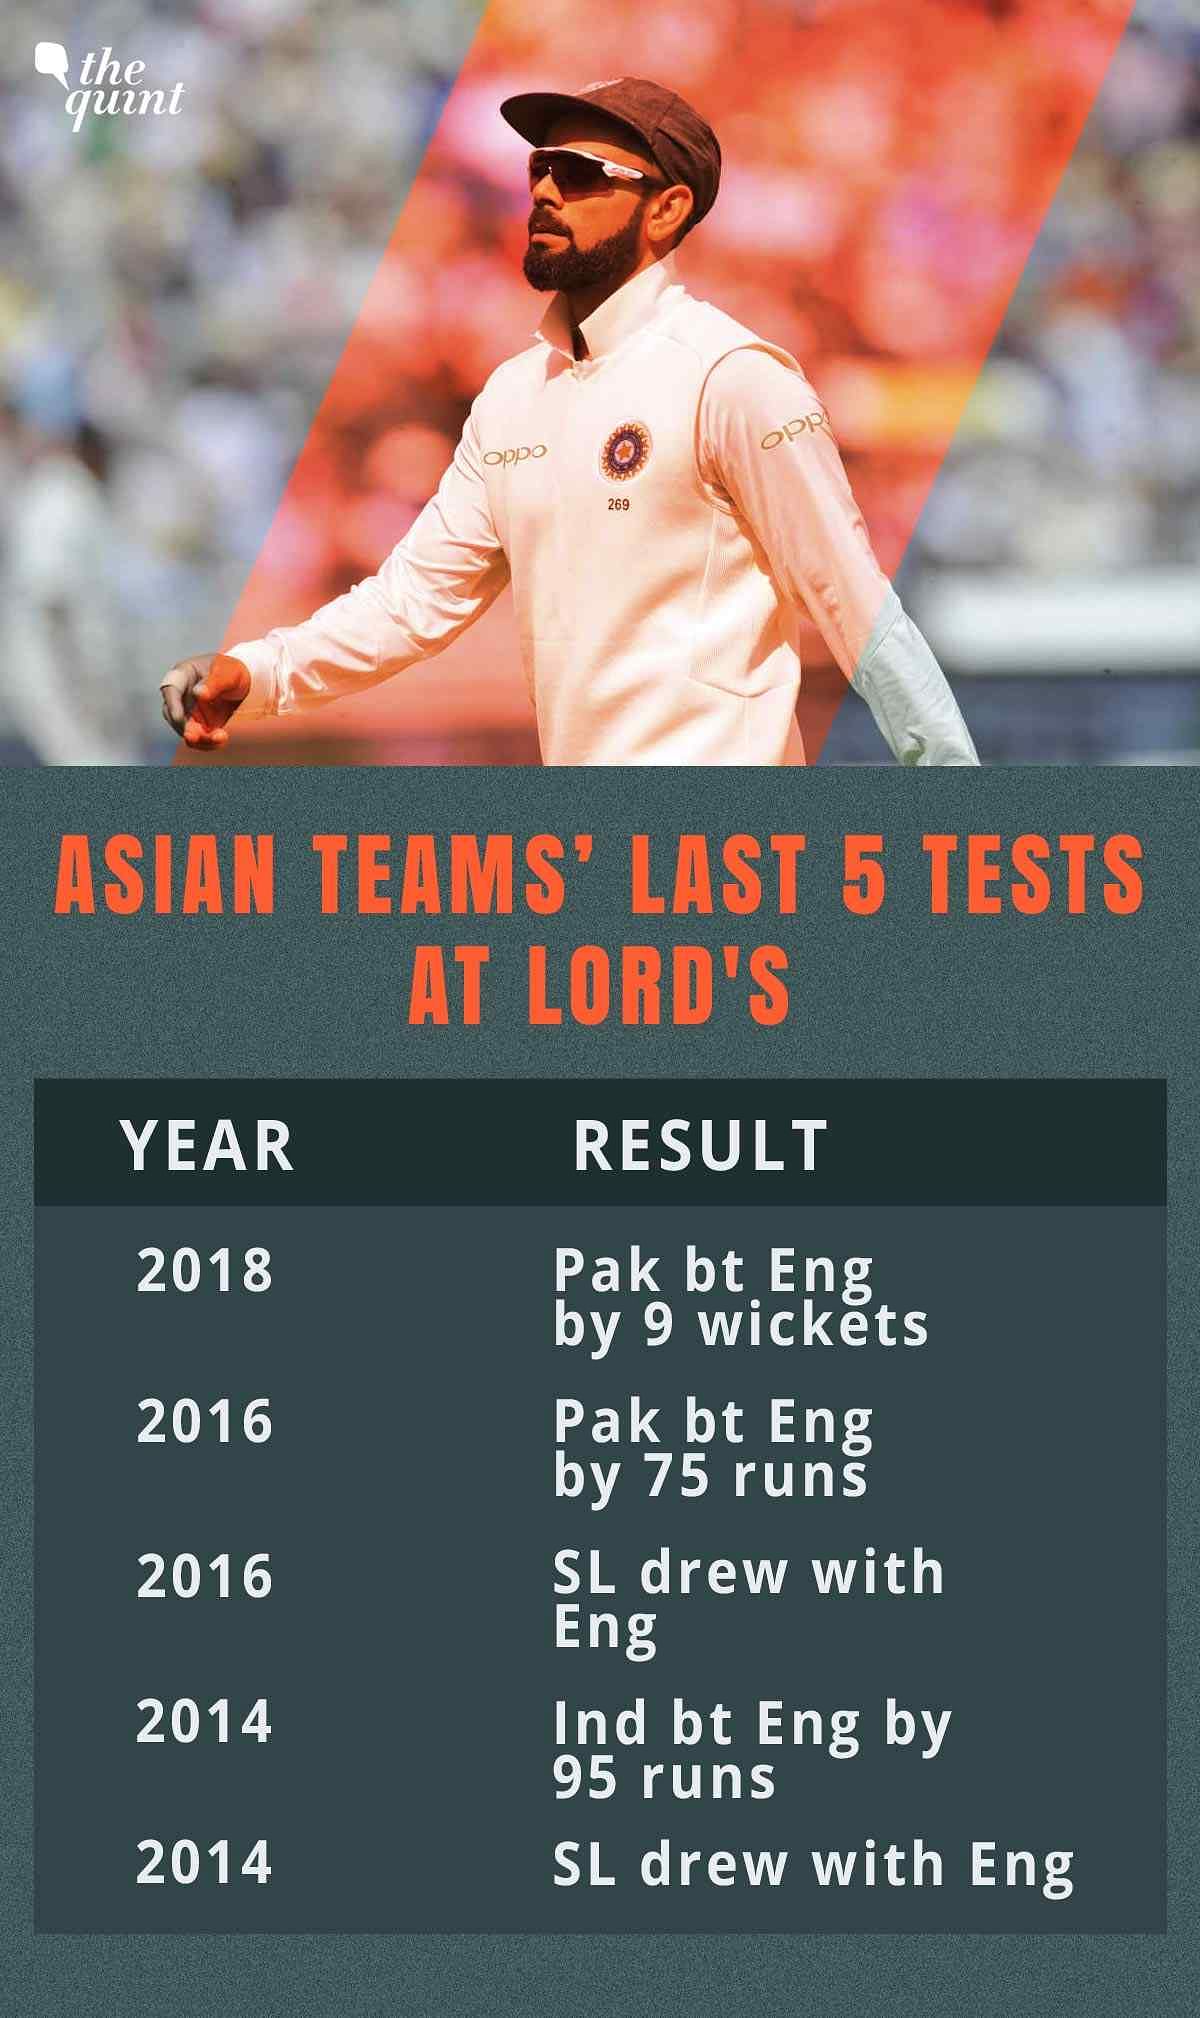 टीम इंडिया 9 अगस्त को इंग्लैंड के खिलाफ लॉर्ड्स के मैदान पर दूसरा टेस्ट खेलेगी